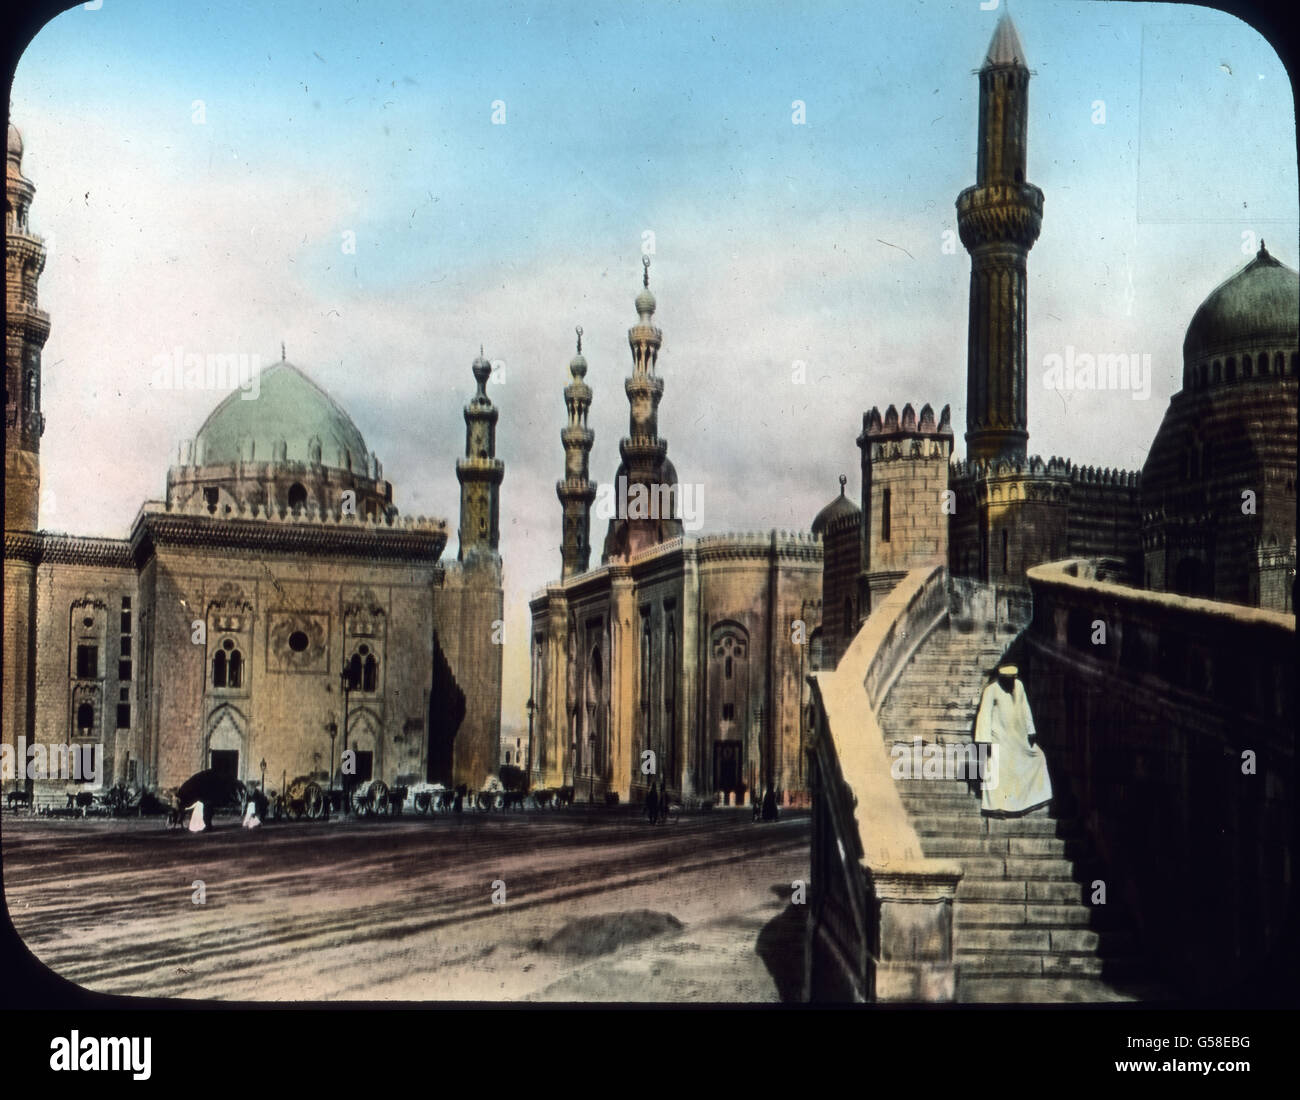 Kairo ist mit etwa 600.000 Einwohnern der zweitgrößte Platz des Orients. Es ist eine echt orientalische Stadt, hat aber auch seine modernen Viertel. Unser Bild zeigt nahe der Zitadelle, von wo man eine umfassende Aussicht über die Stadt und Umgebung hat, drei beieinanderliegende Moscheen, ein Bild von eigenartigstem Reiz. Tagelang könnte man alte interessante Bauwerke besichtigen. Trip around the world,  travel, journey, Egypt, Cairo, 1920s, 20th century, Archive, Carl Simon, history, historical, mosque, old city, religion, building, architecture, belief, dome, minaret, square, capital, minimu Stock Photo